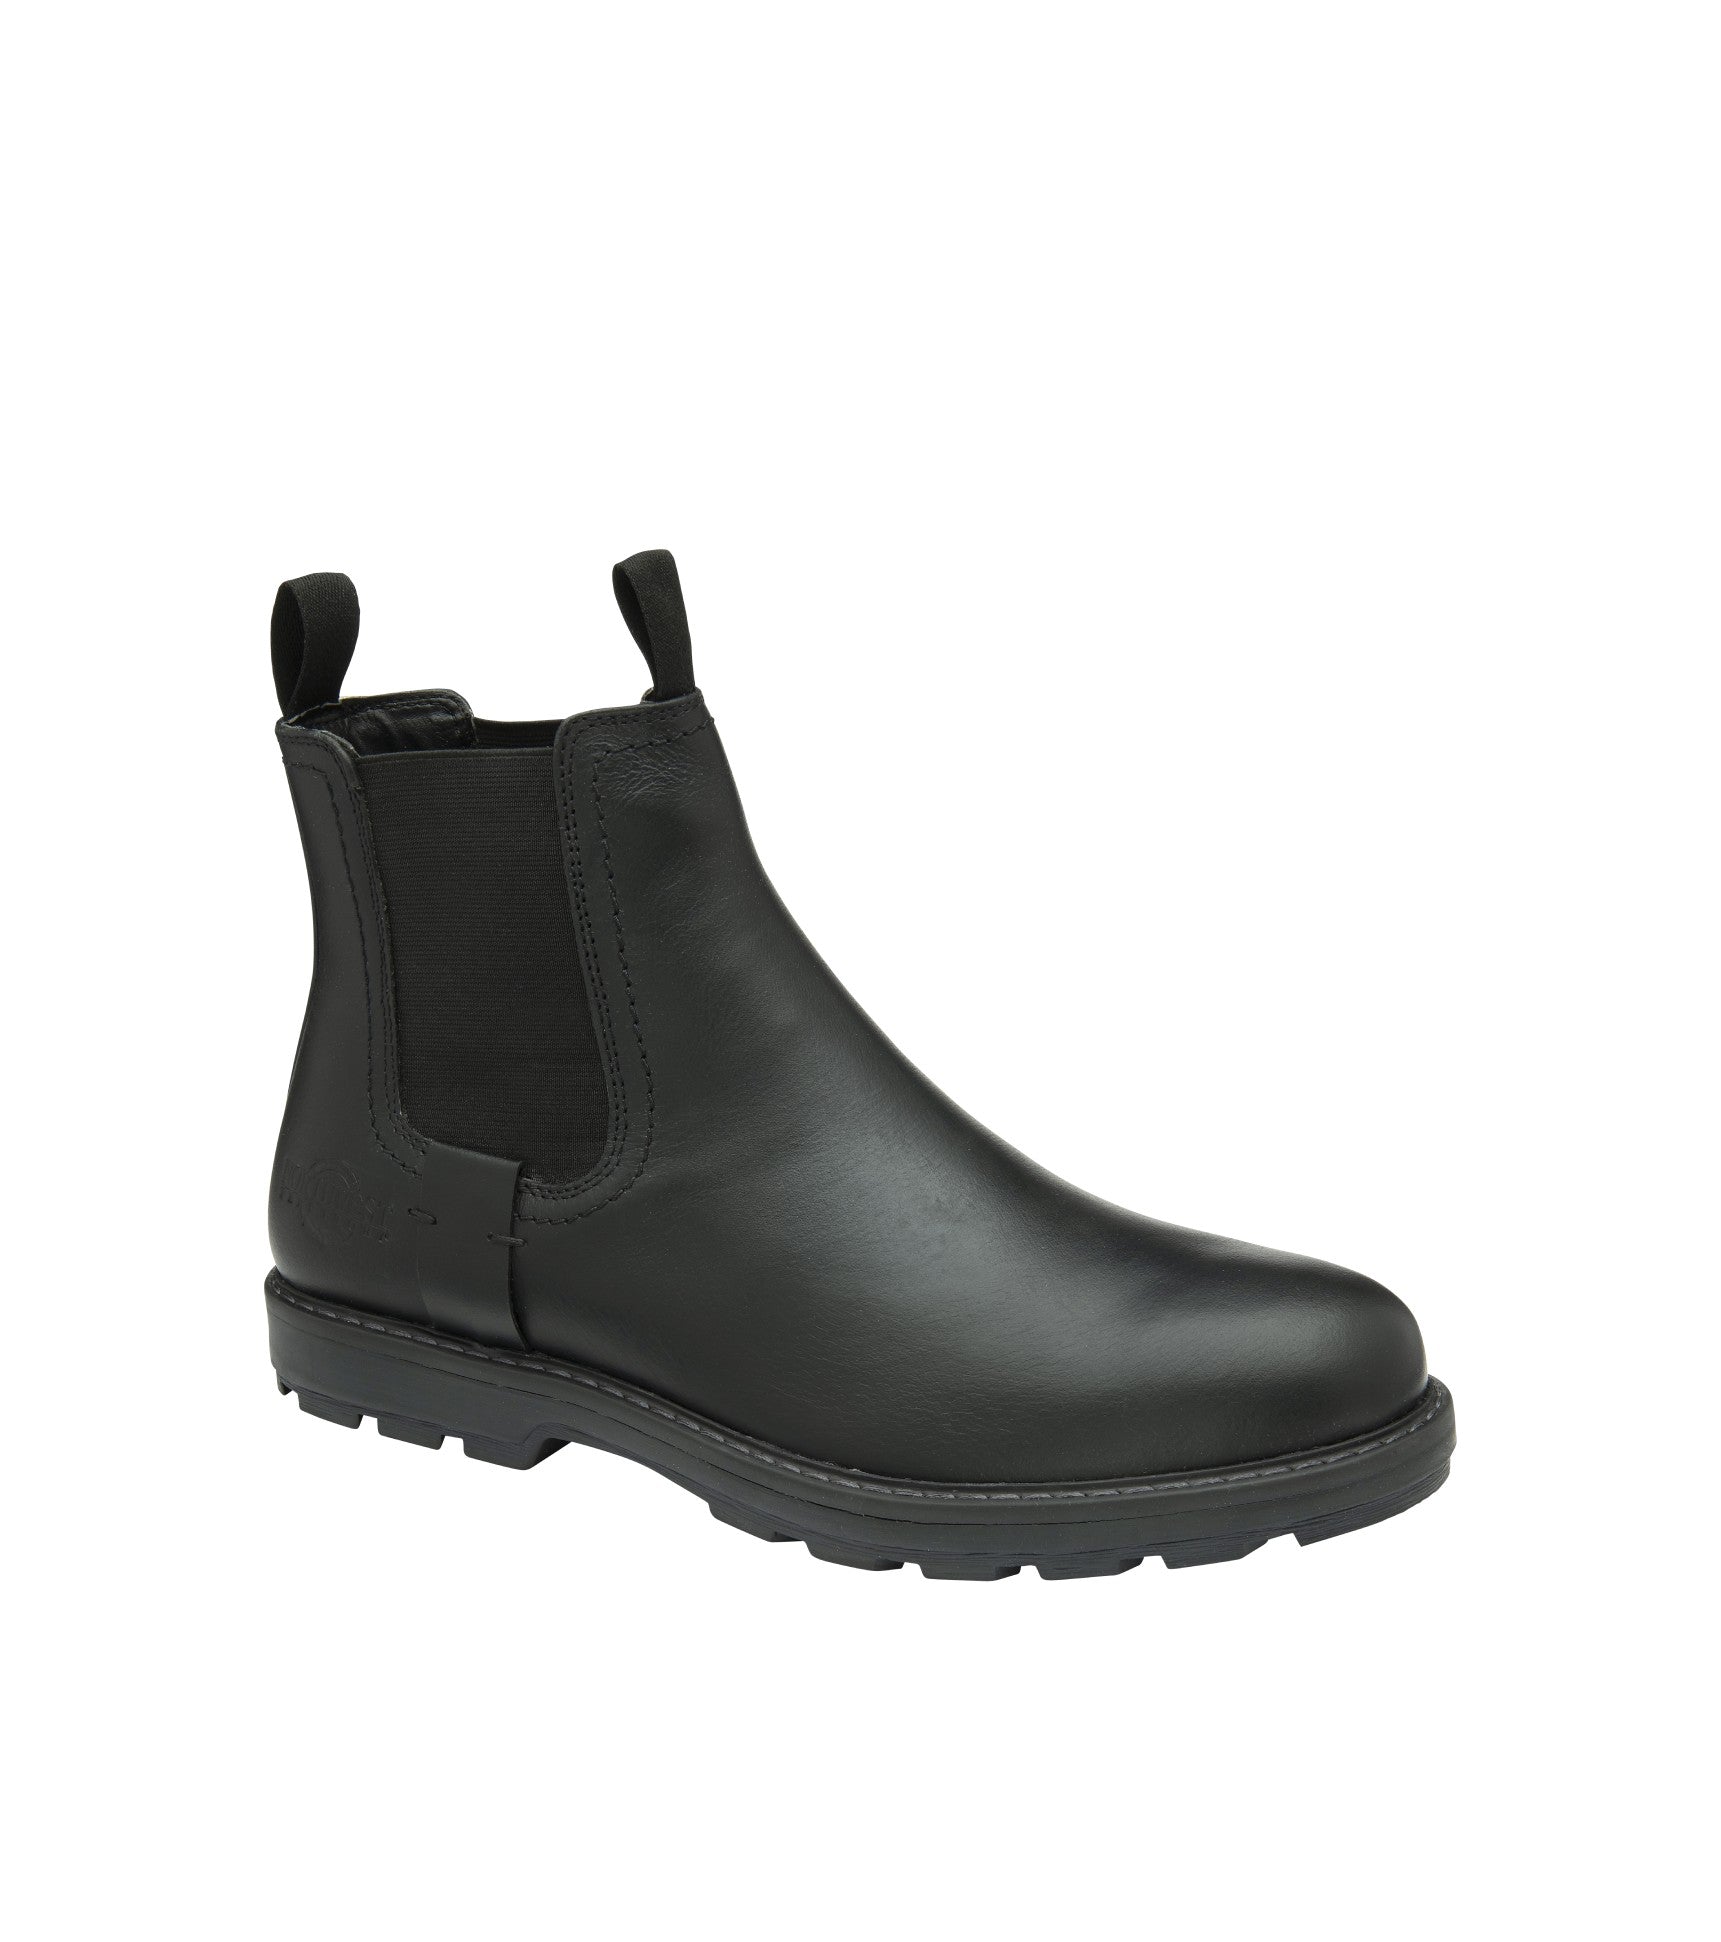 Men's Leather Waterproof Walking Chelsea Boots